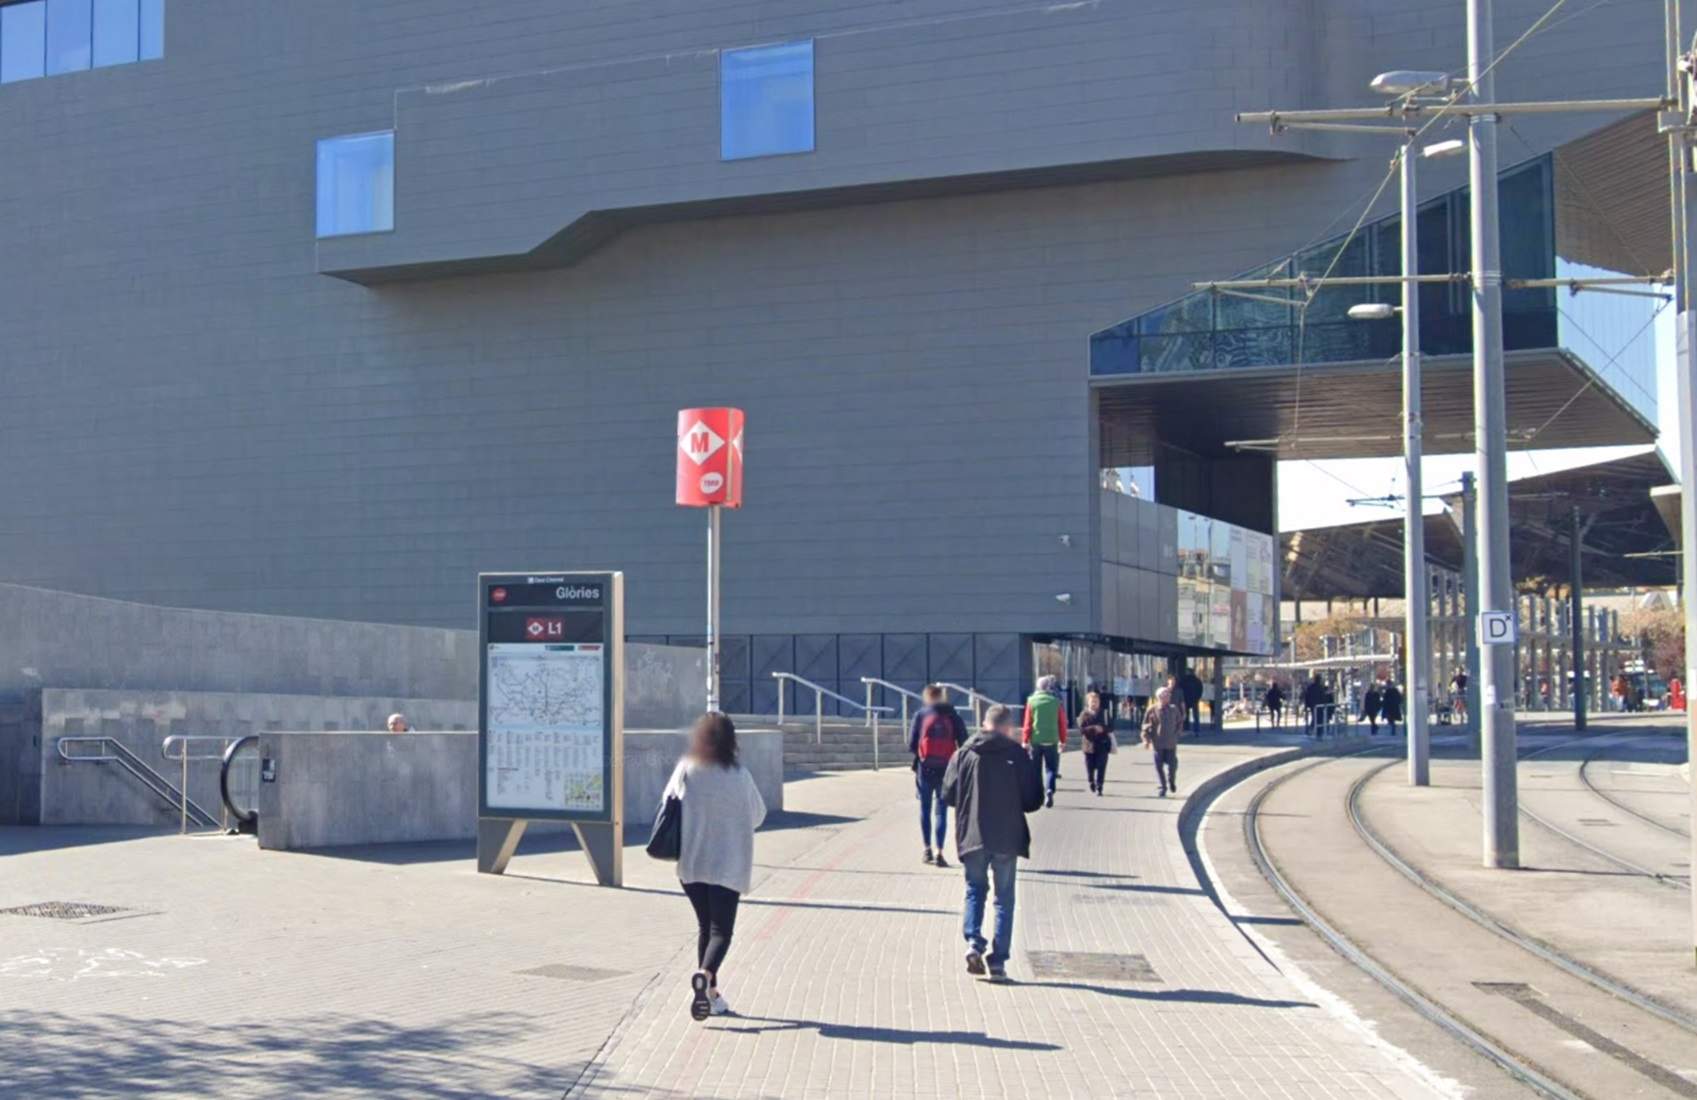 L’estació de Metro de Glòries tindrà un accés directe al Museu del Disseny